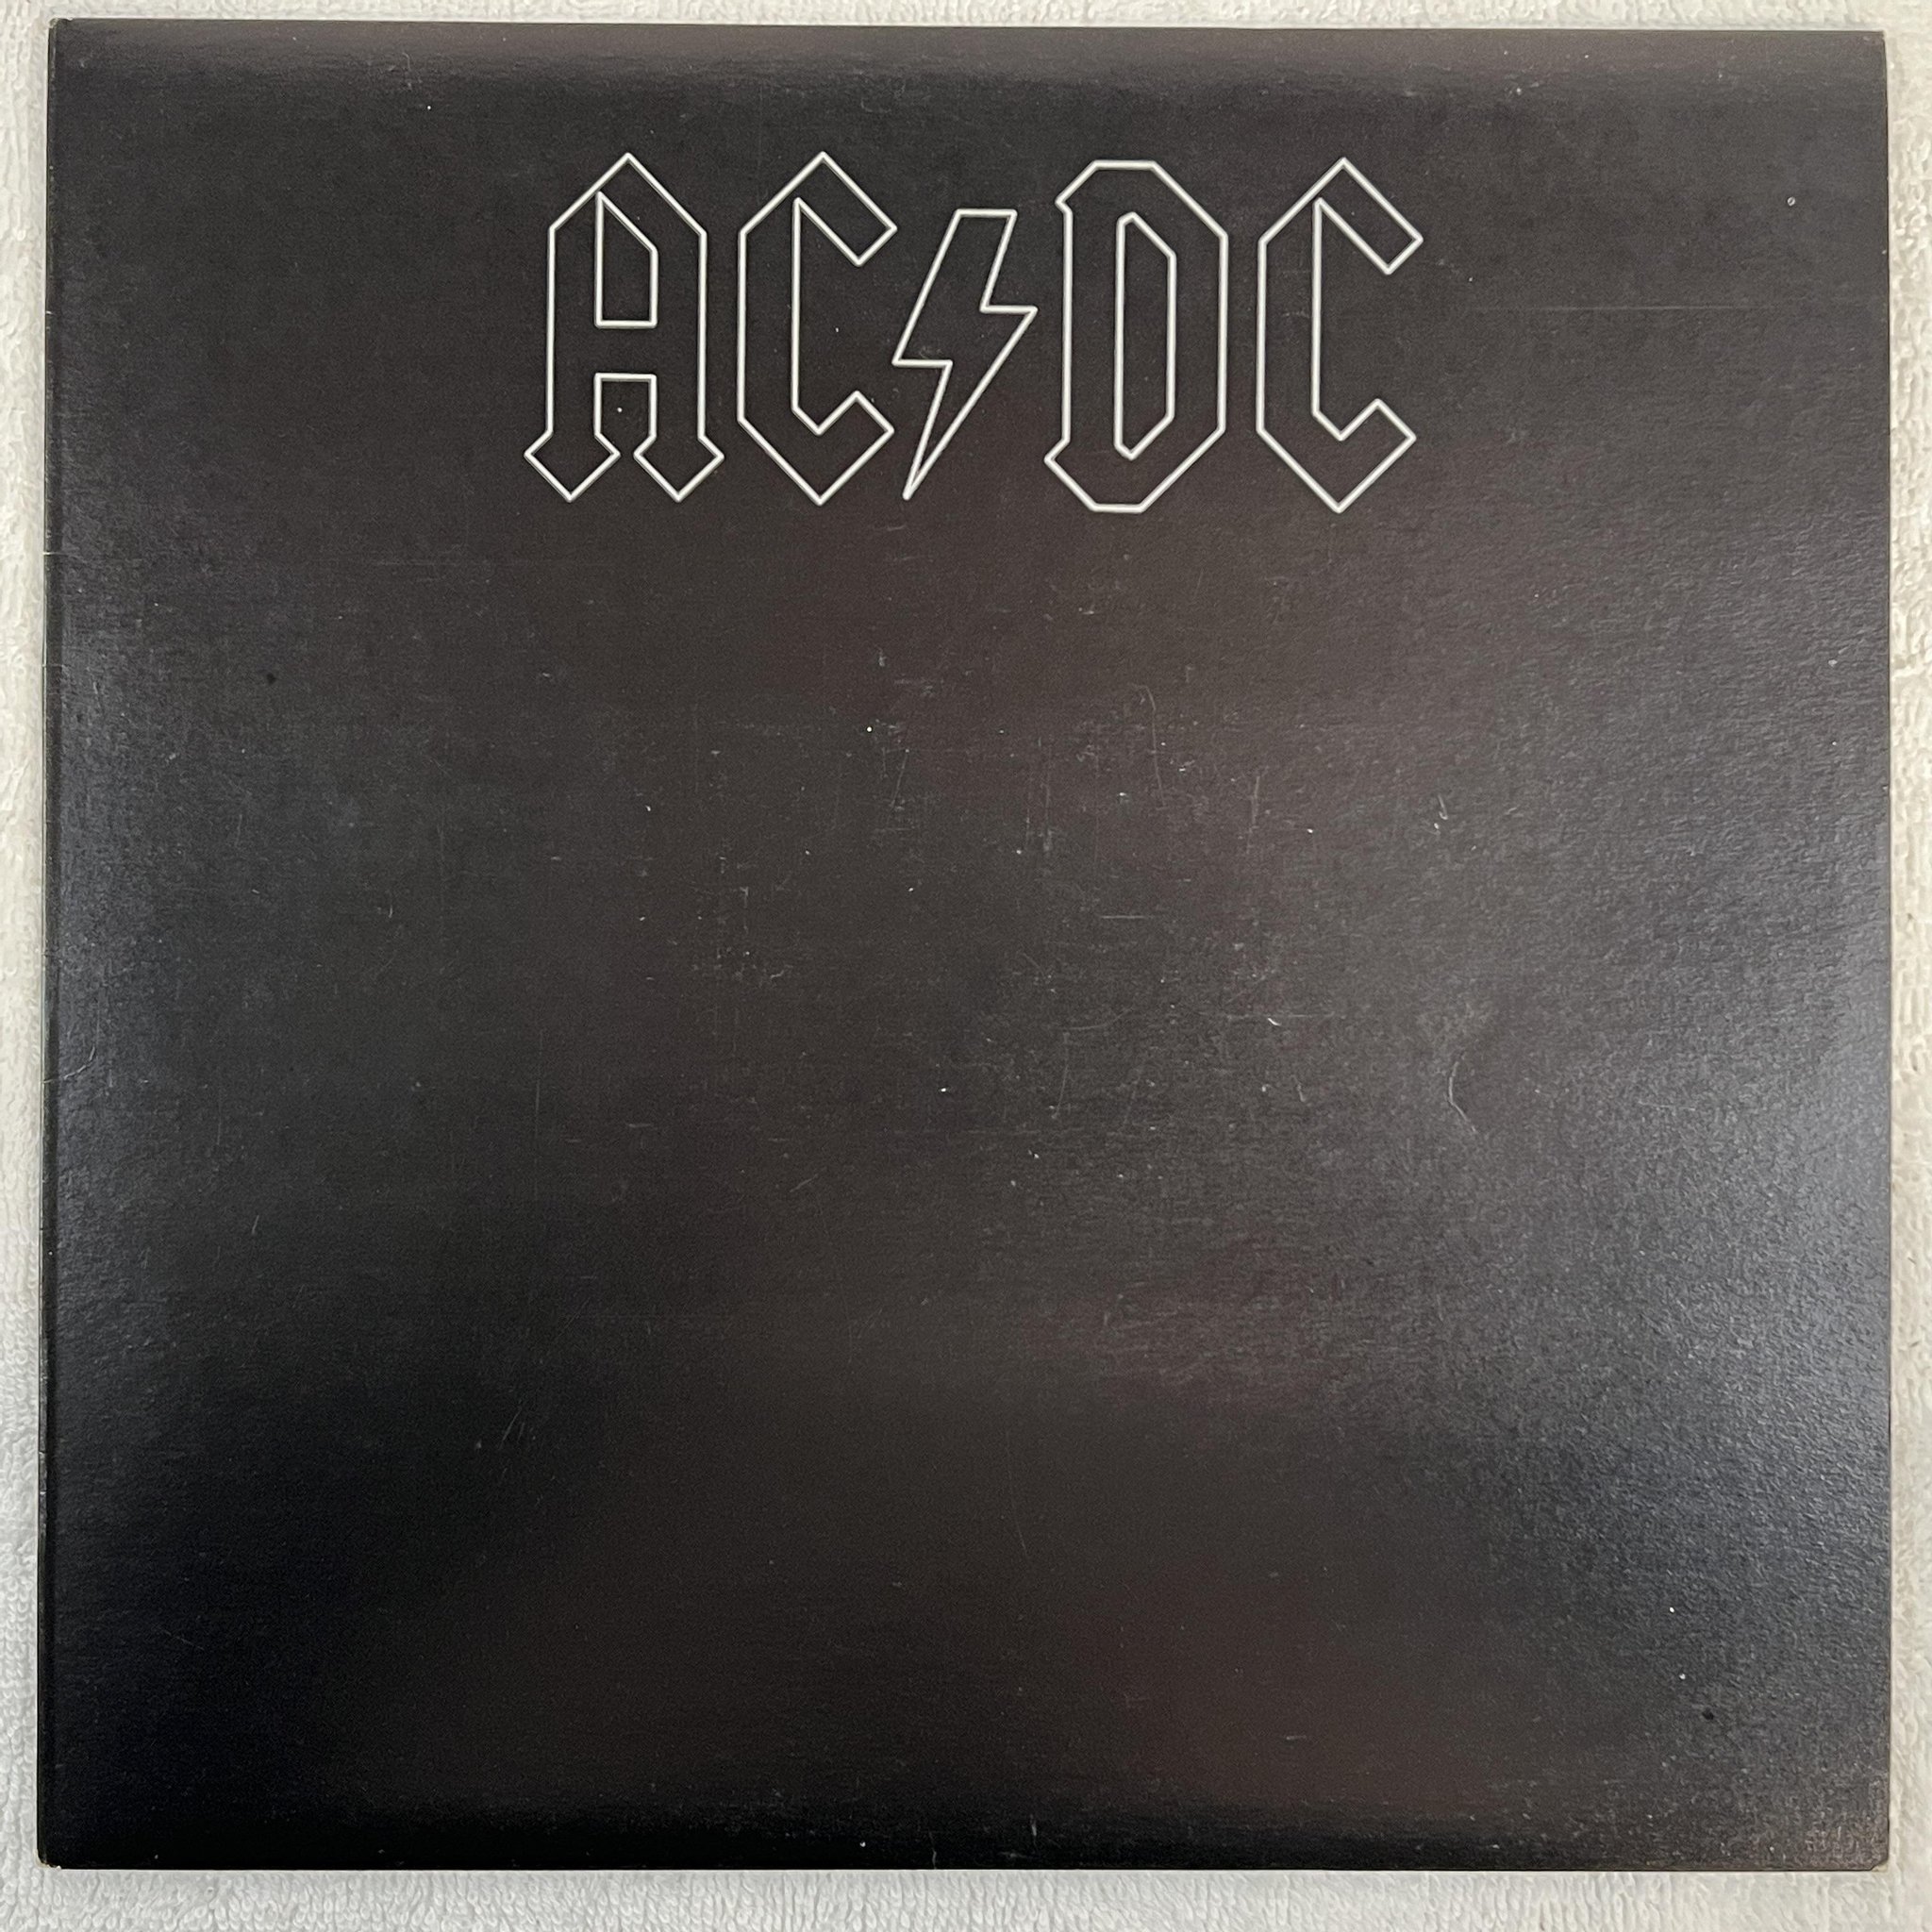 Omslagsbild för skivan AC/DC back in black LP -80/87 Australia ALBERT APLP 046 *** R A R E ***